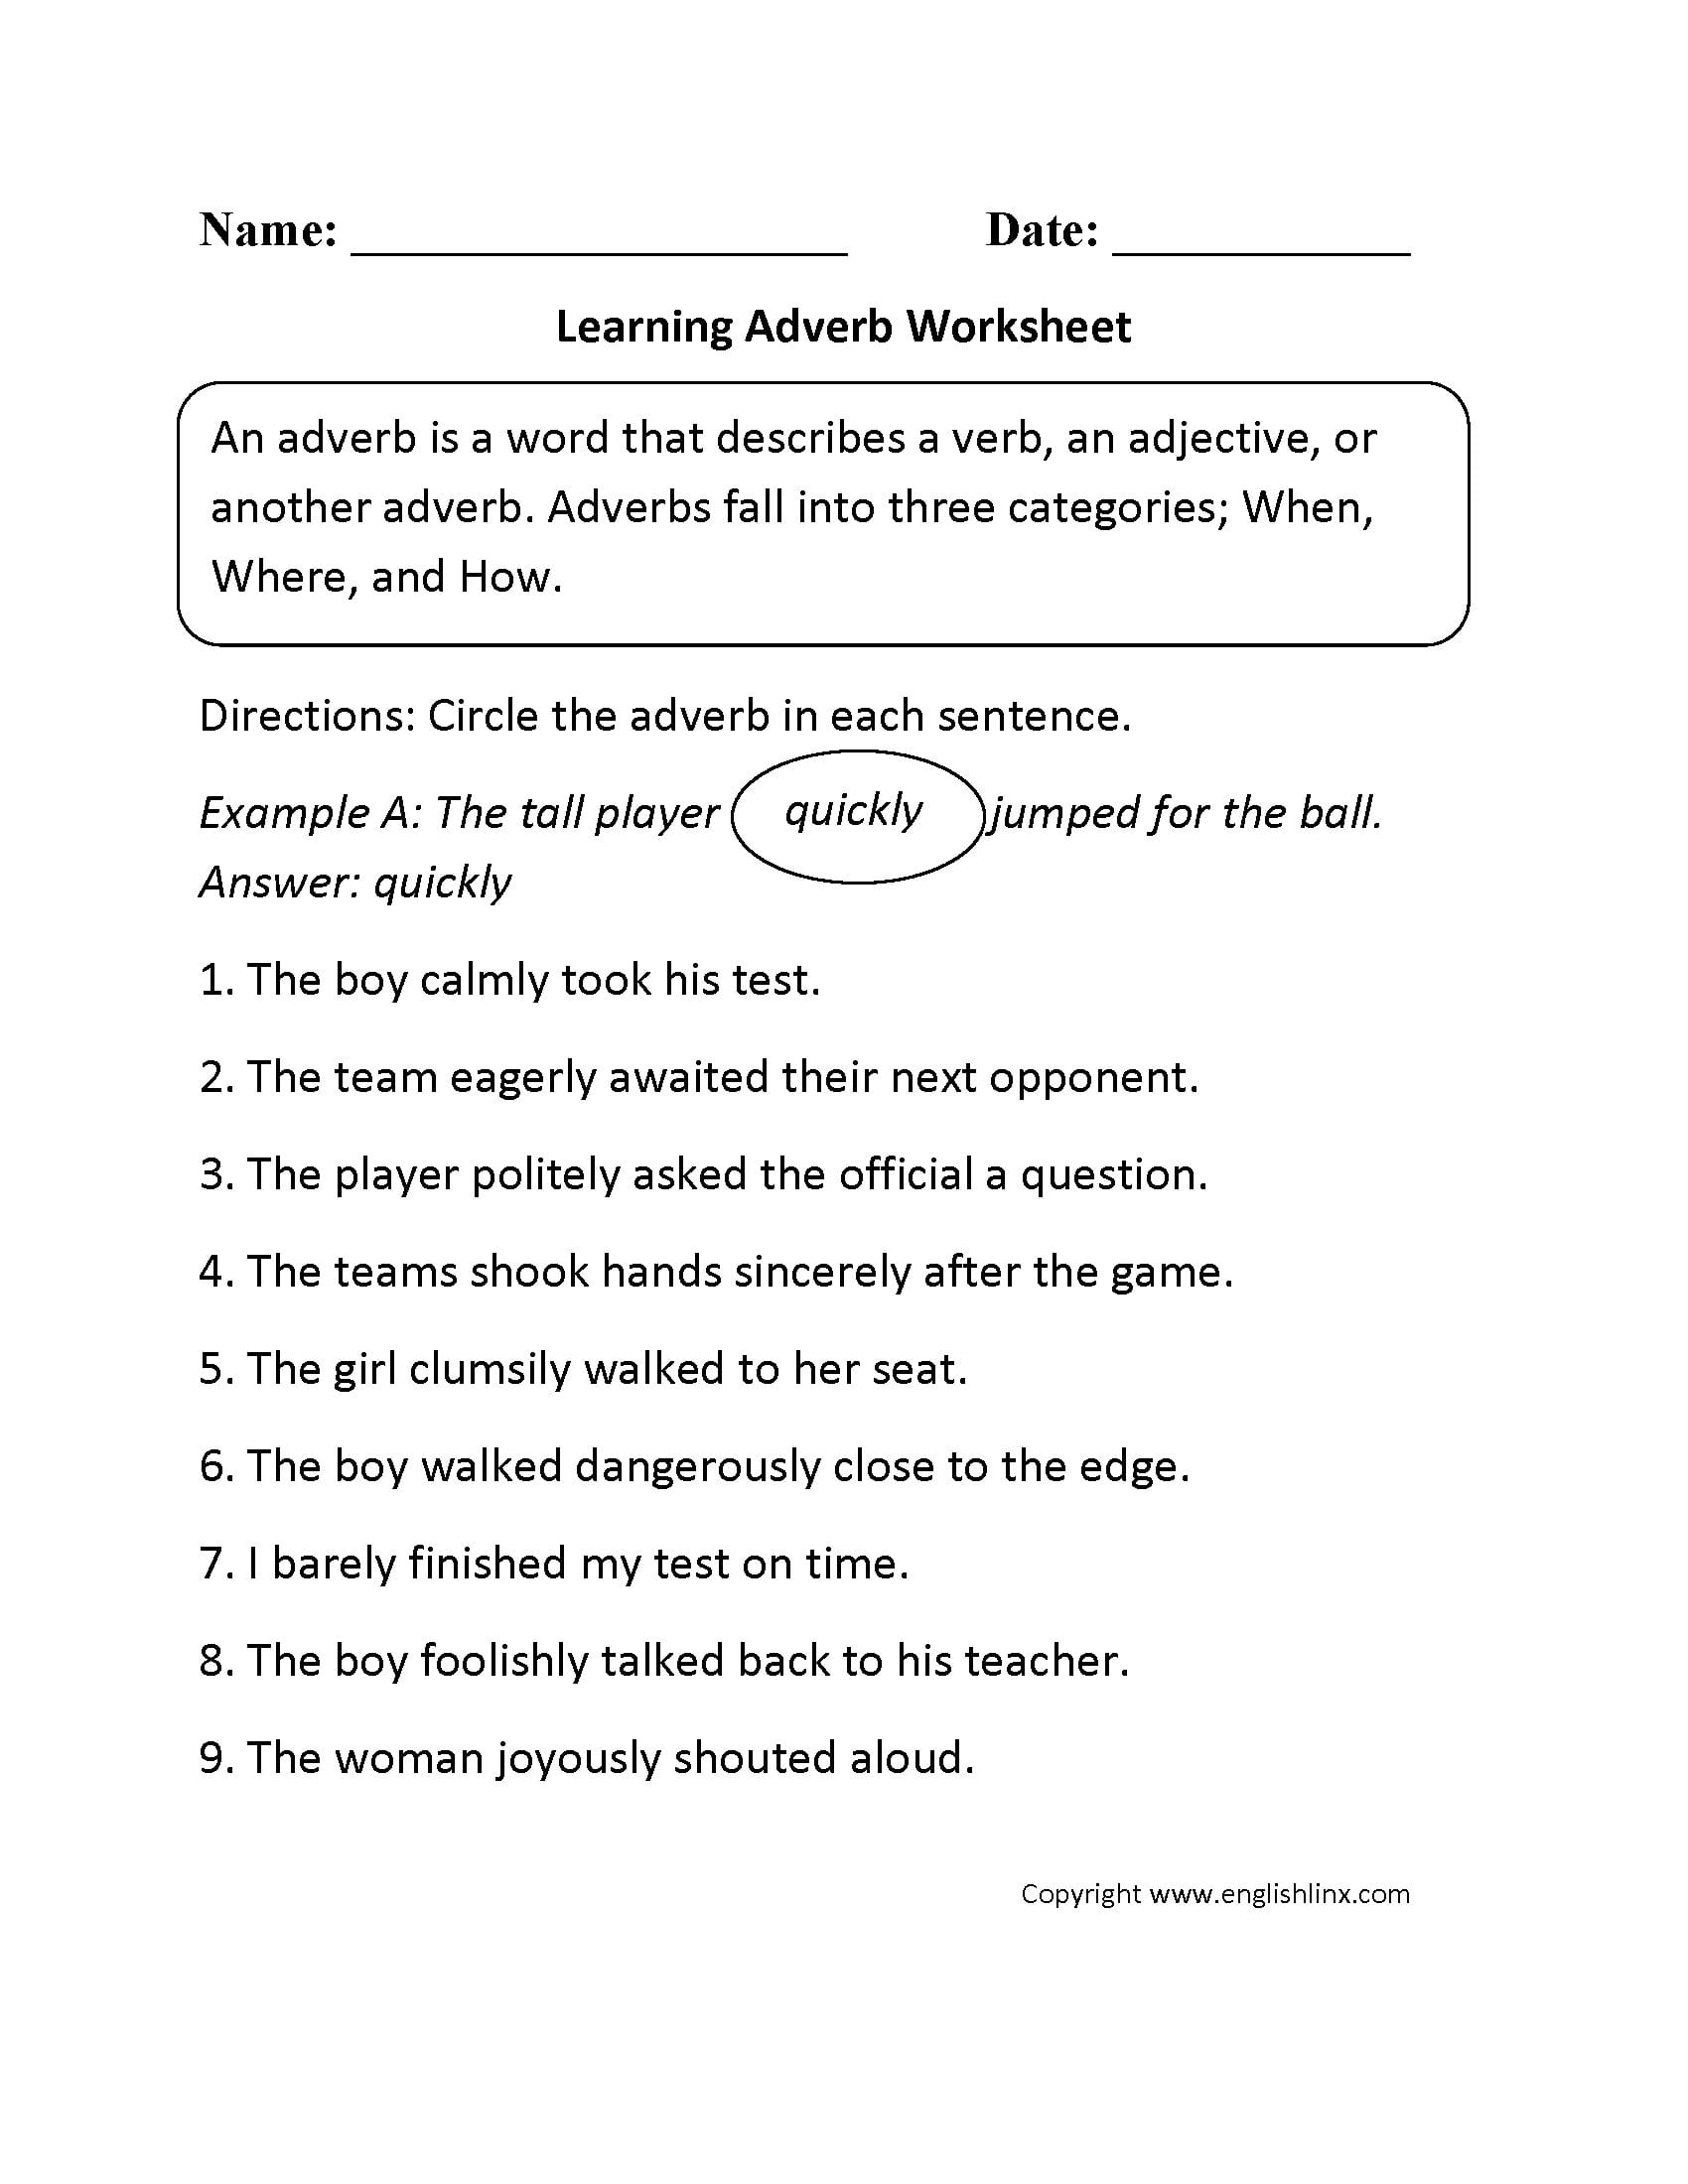 adverb-worksheets